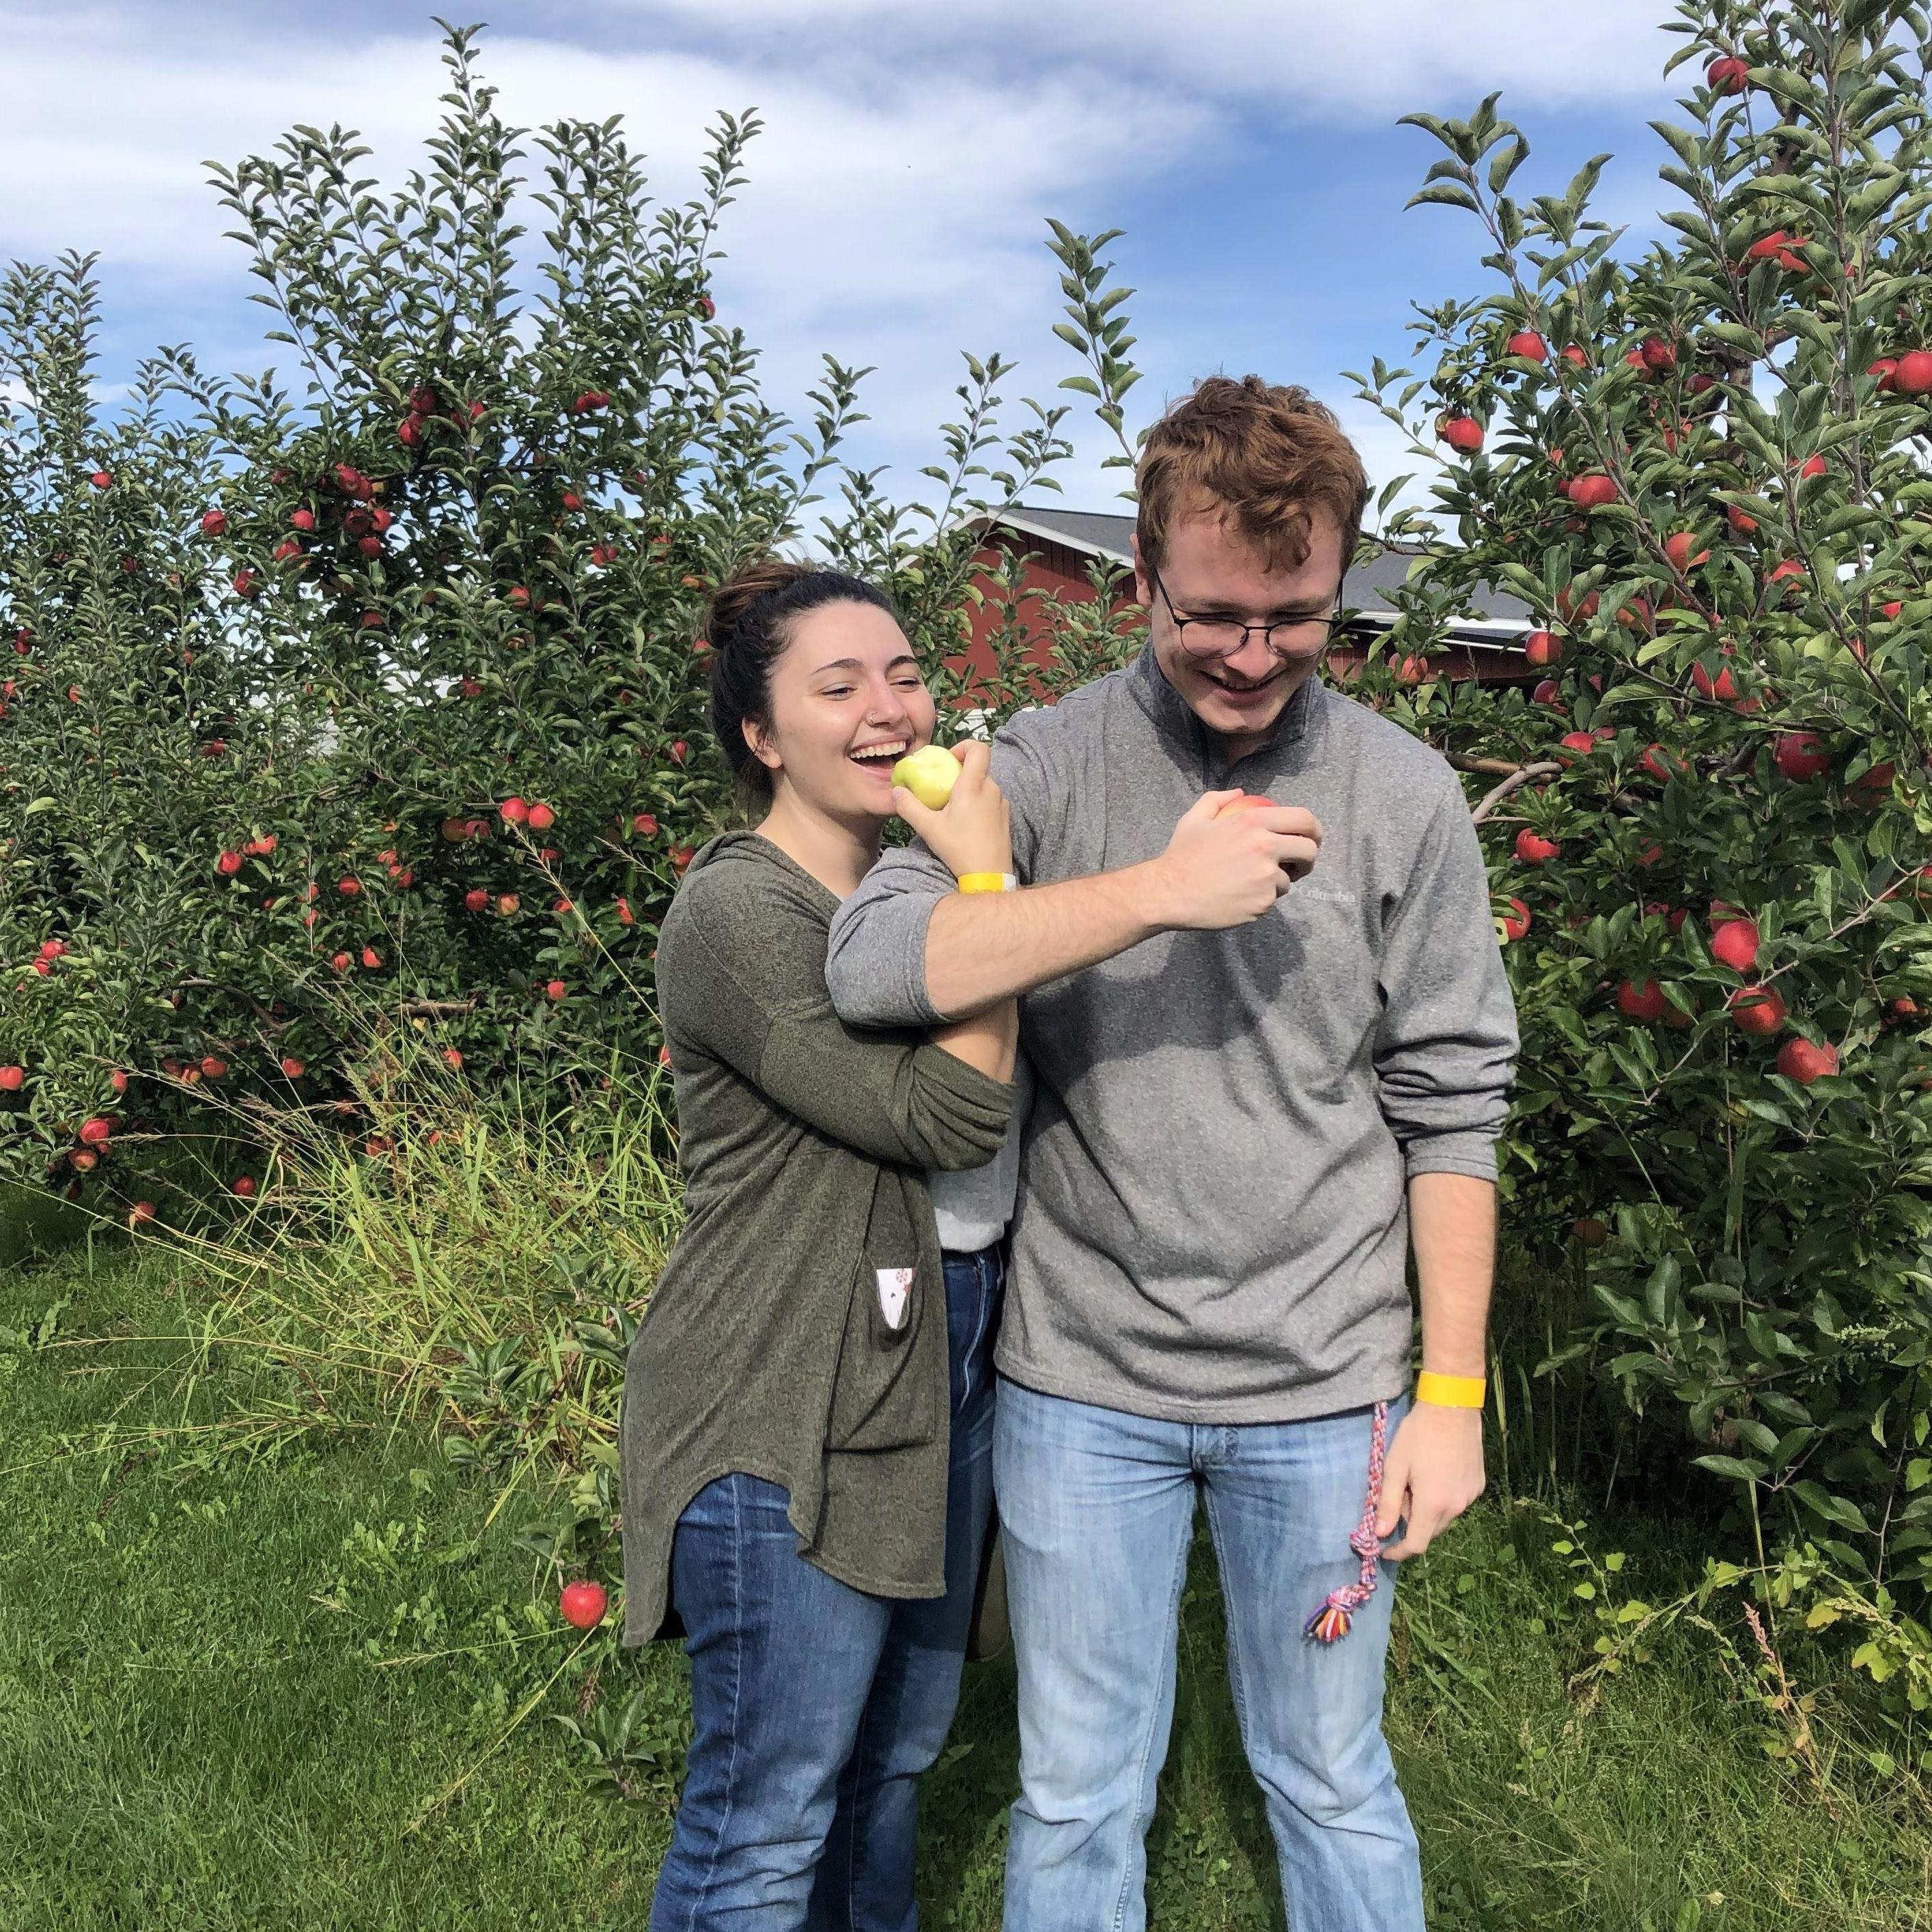 Visiting Brendan in Kalamazoo and enjoying apple picking